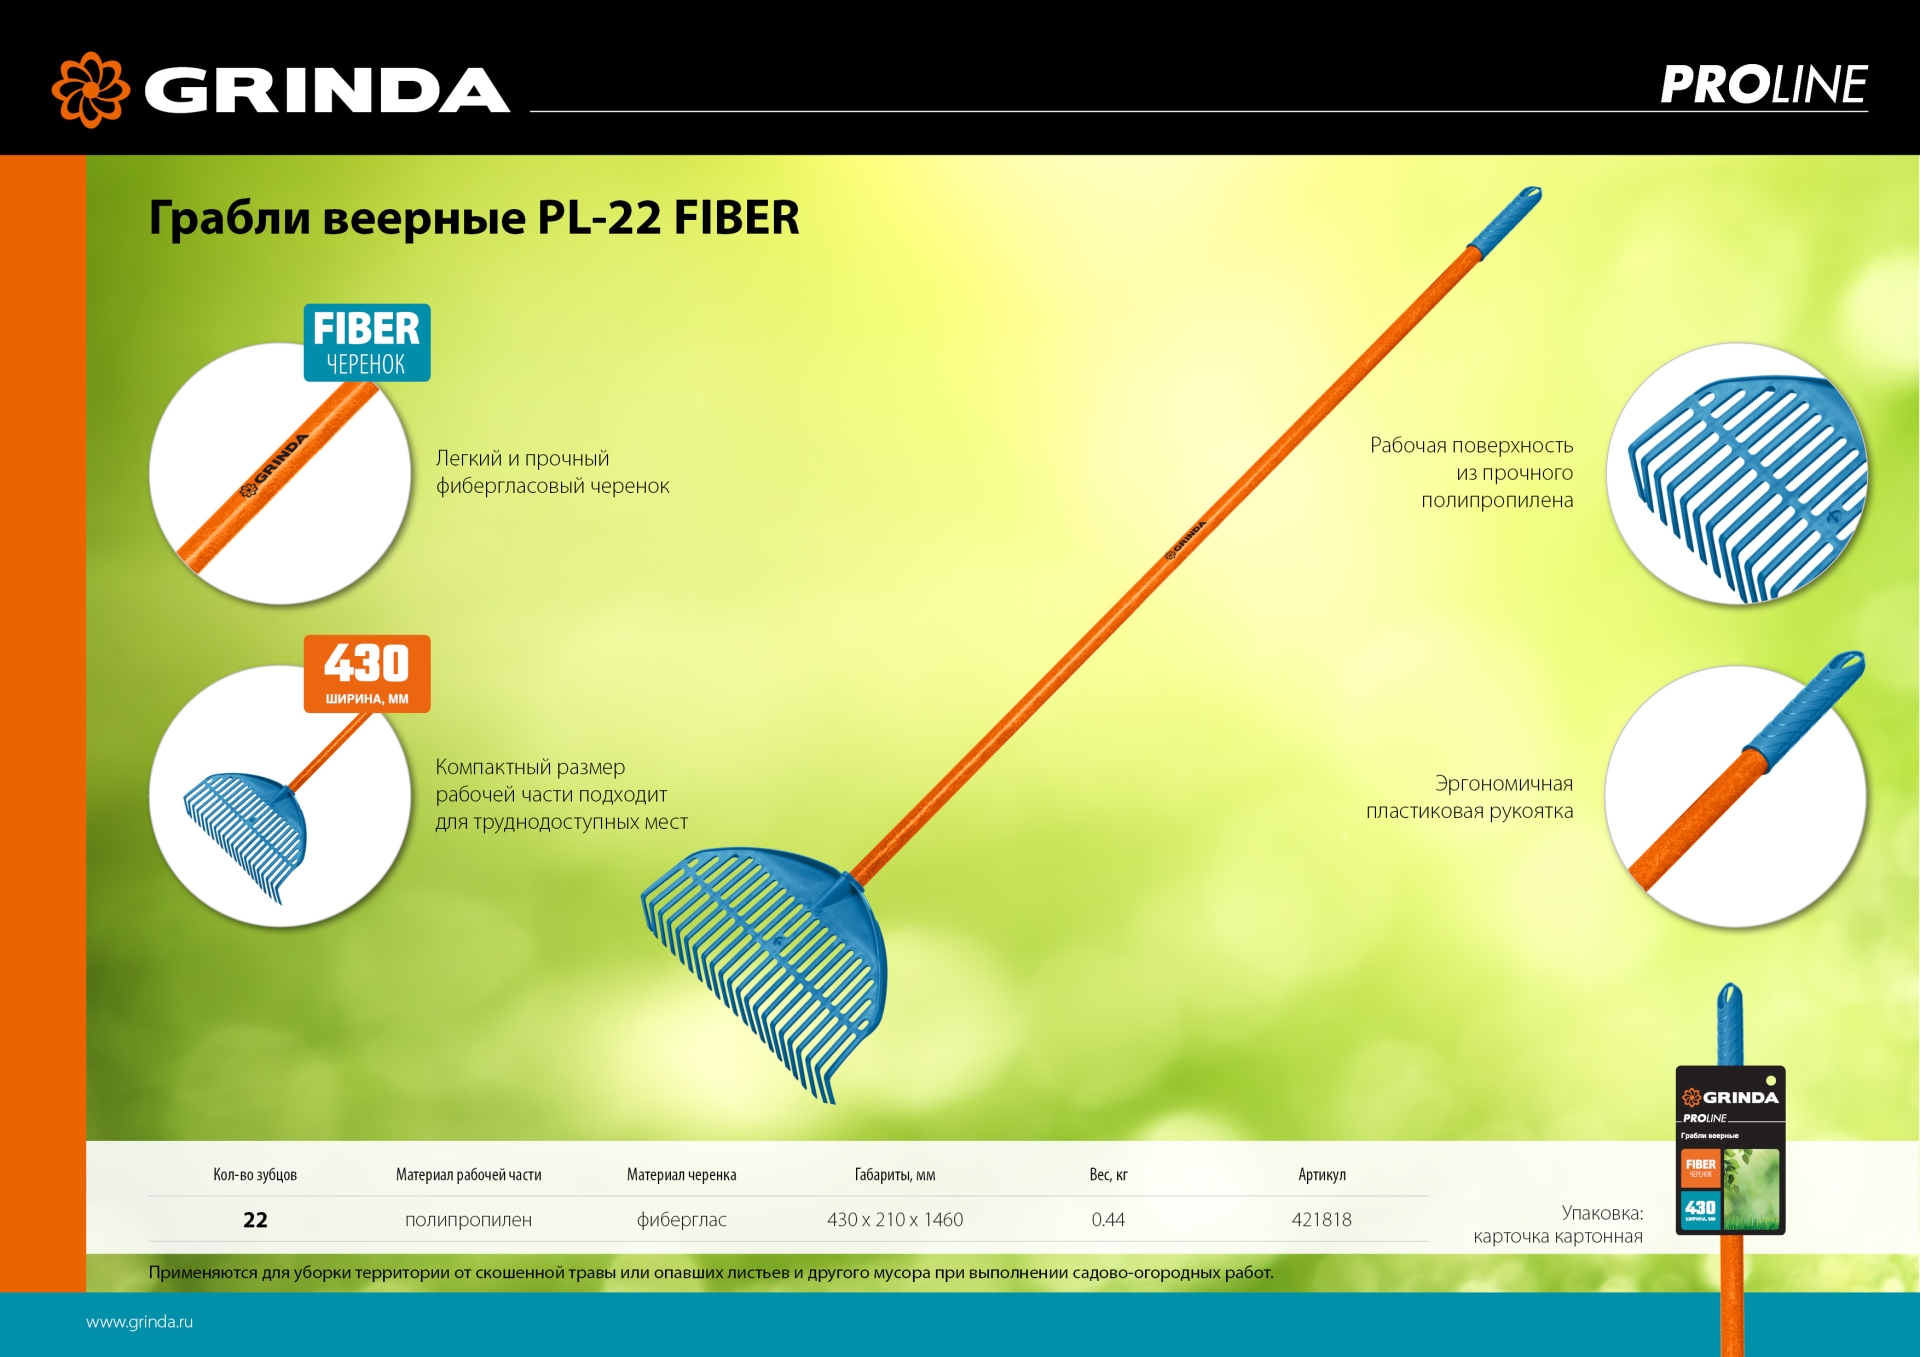 GRINDA PL-22 FIBER, 450 х 40 х 1460 мм, 22 зубца, ударопрочный пластик, фибергласовый черенок, грабли веерные пластиковые, PROLine (421818)